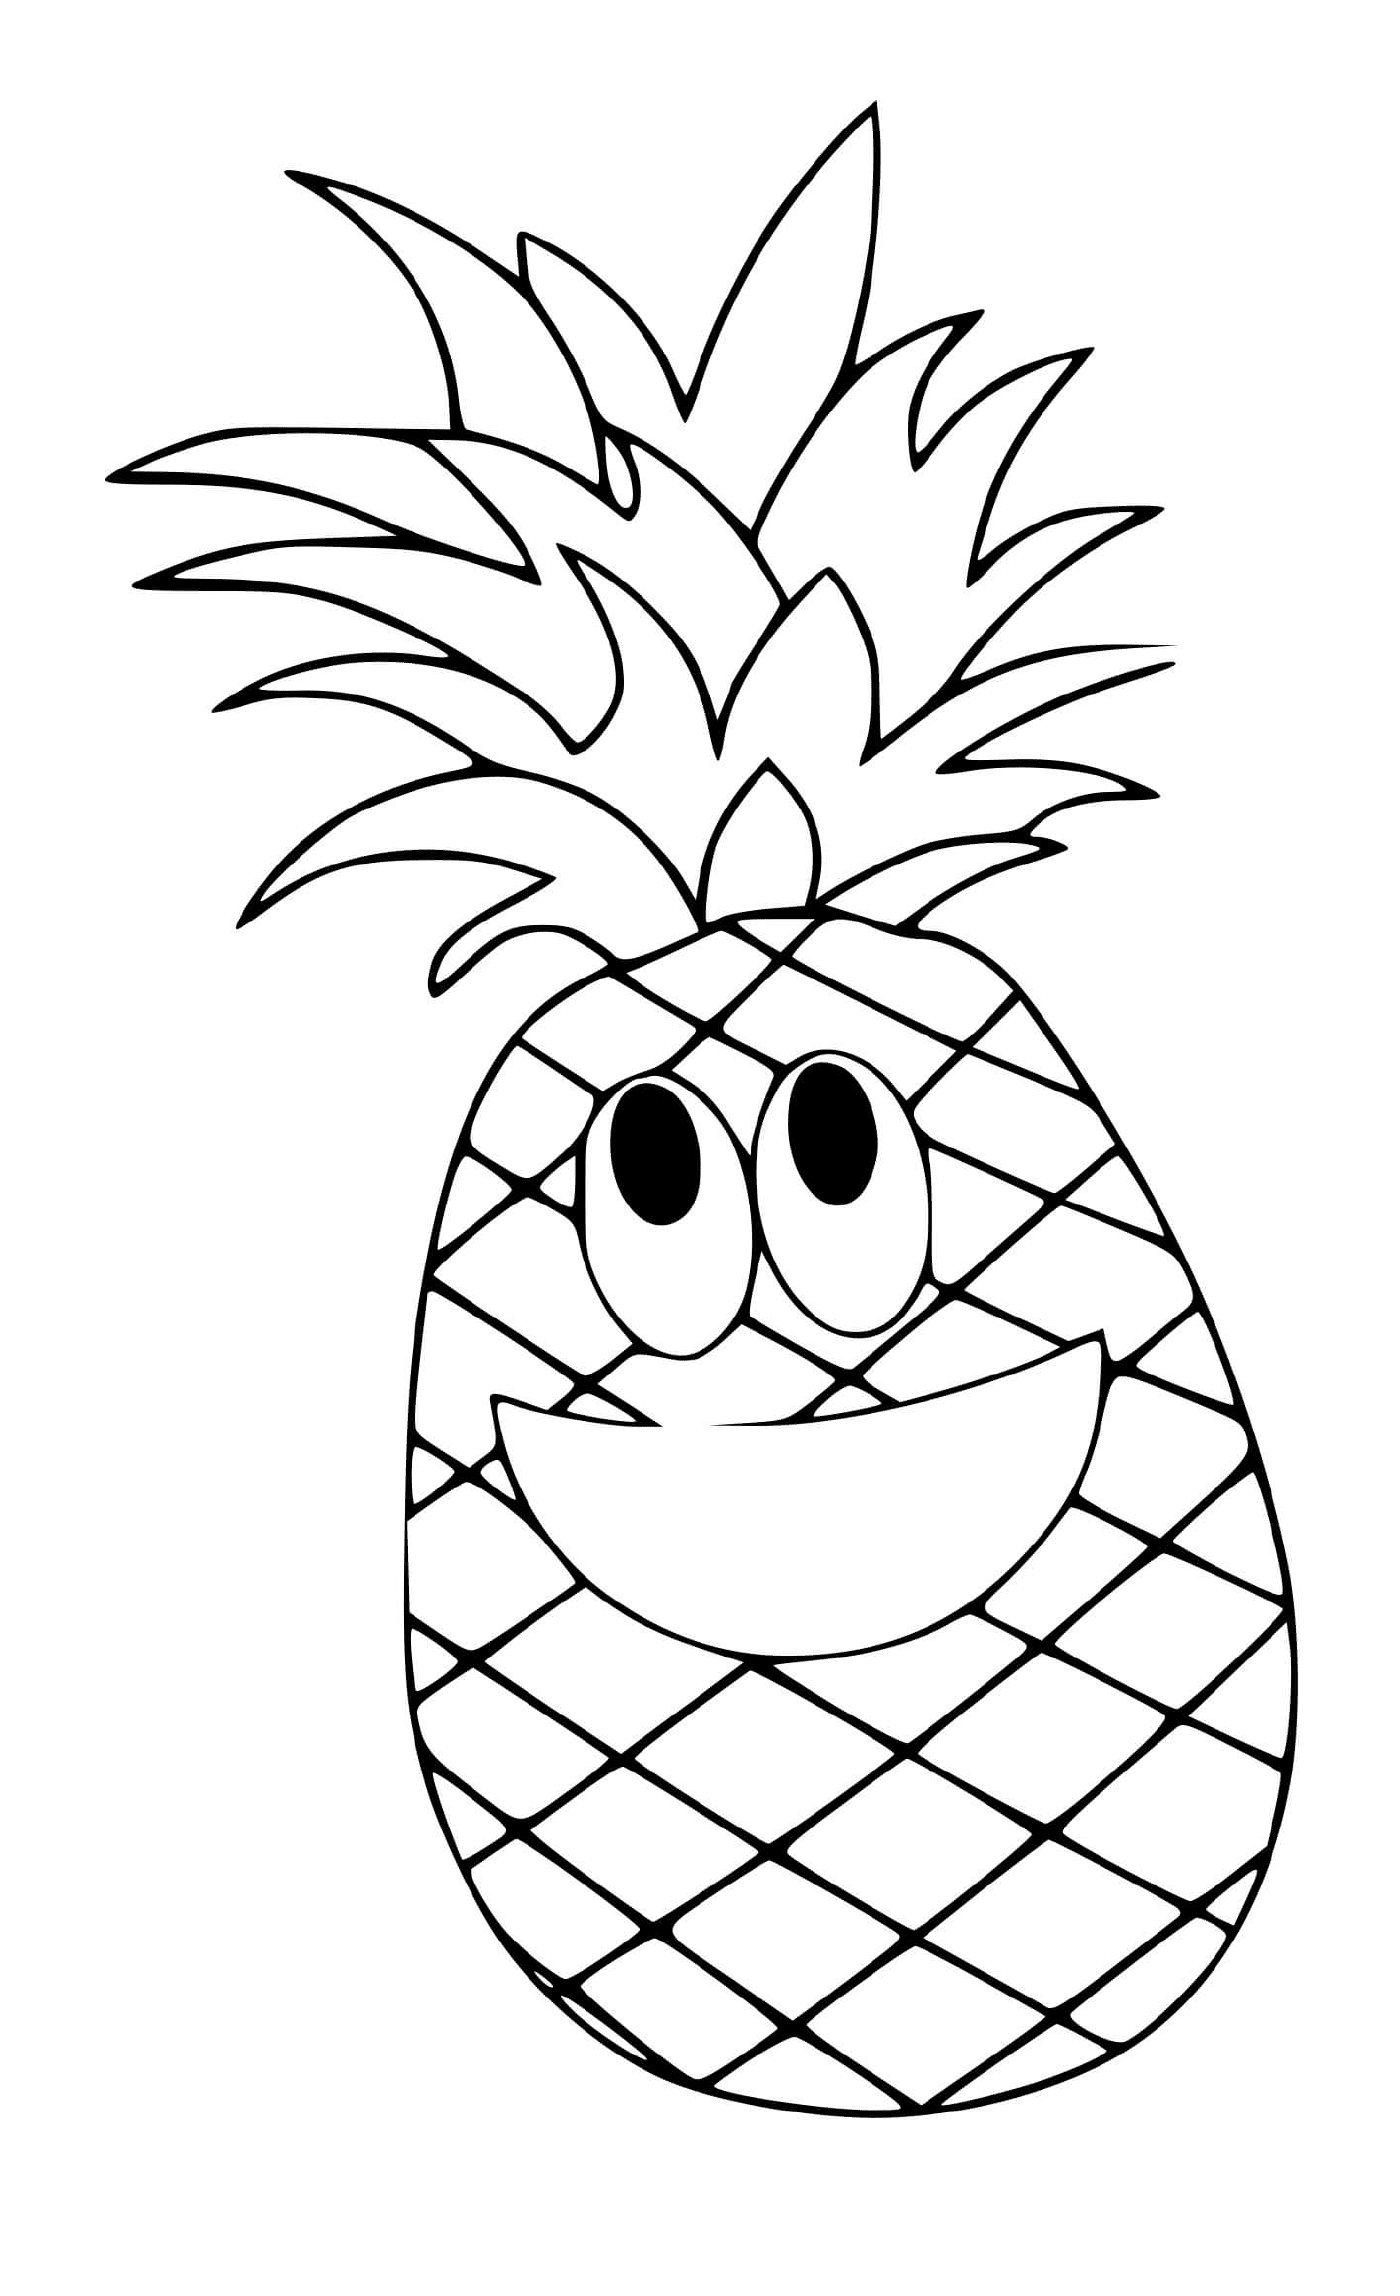  Un ananas felice e vivace 